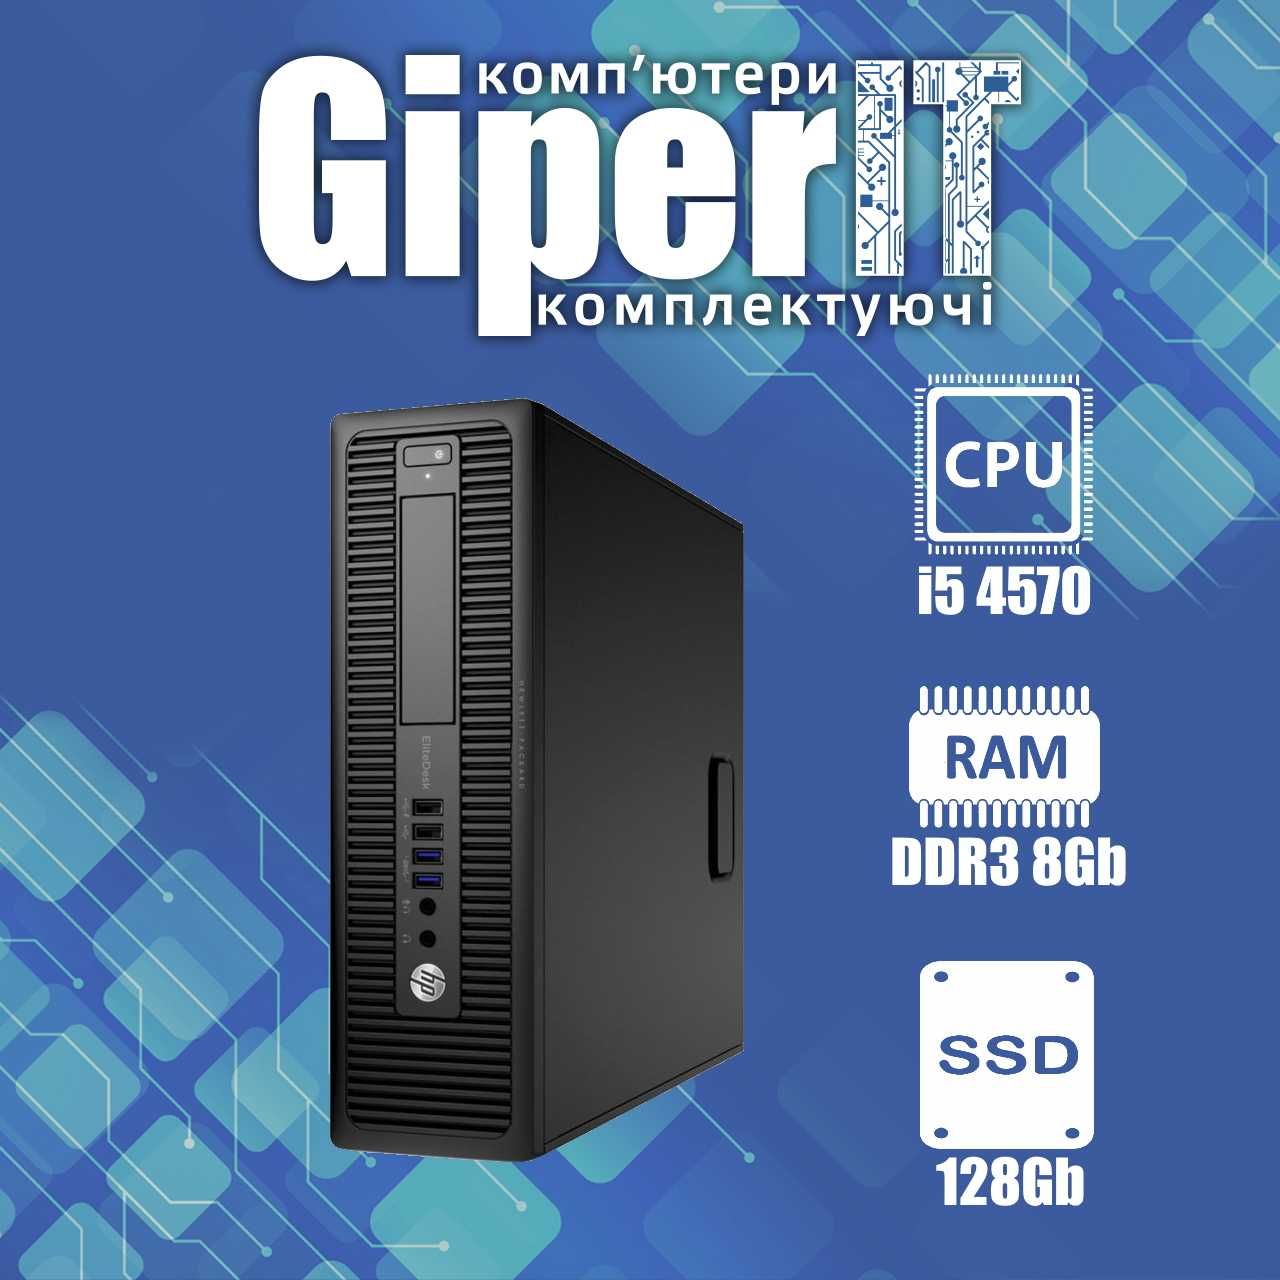 Компьютер HP ElitDesk 800 G1 SFF (I5 4570, DDR3 8Gb, 128Gb SSD)